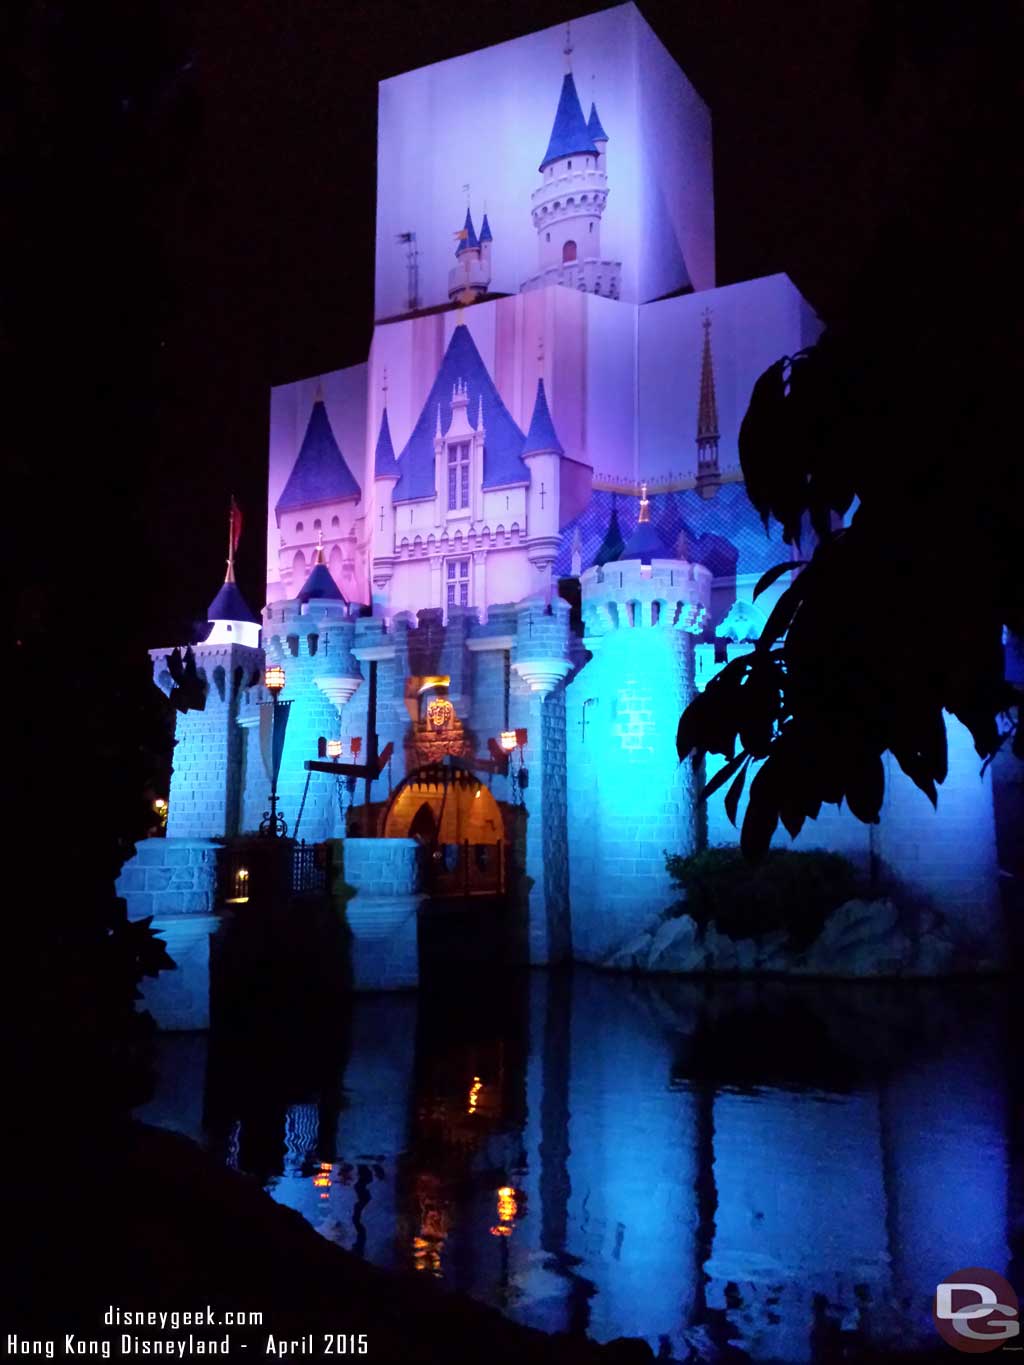 Hong Kong Disneyland - Sleeping Beauty Castle Renovation 2015